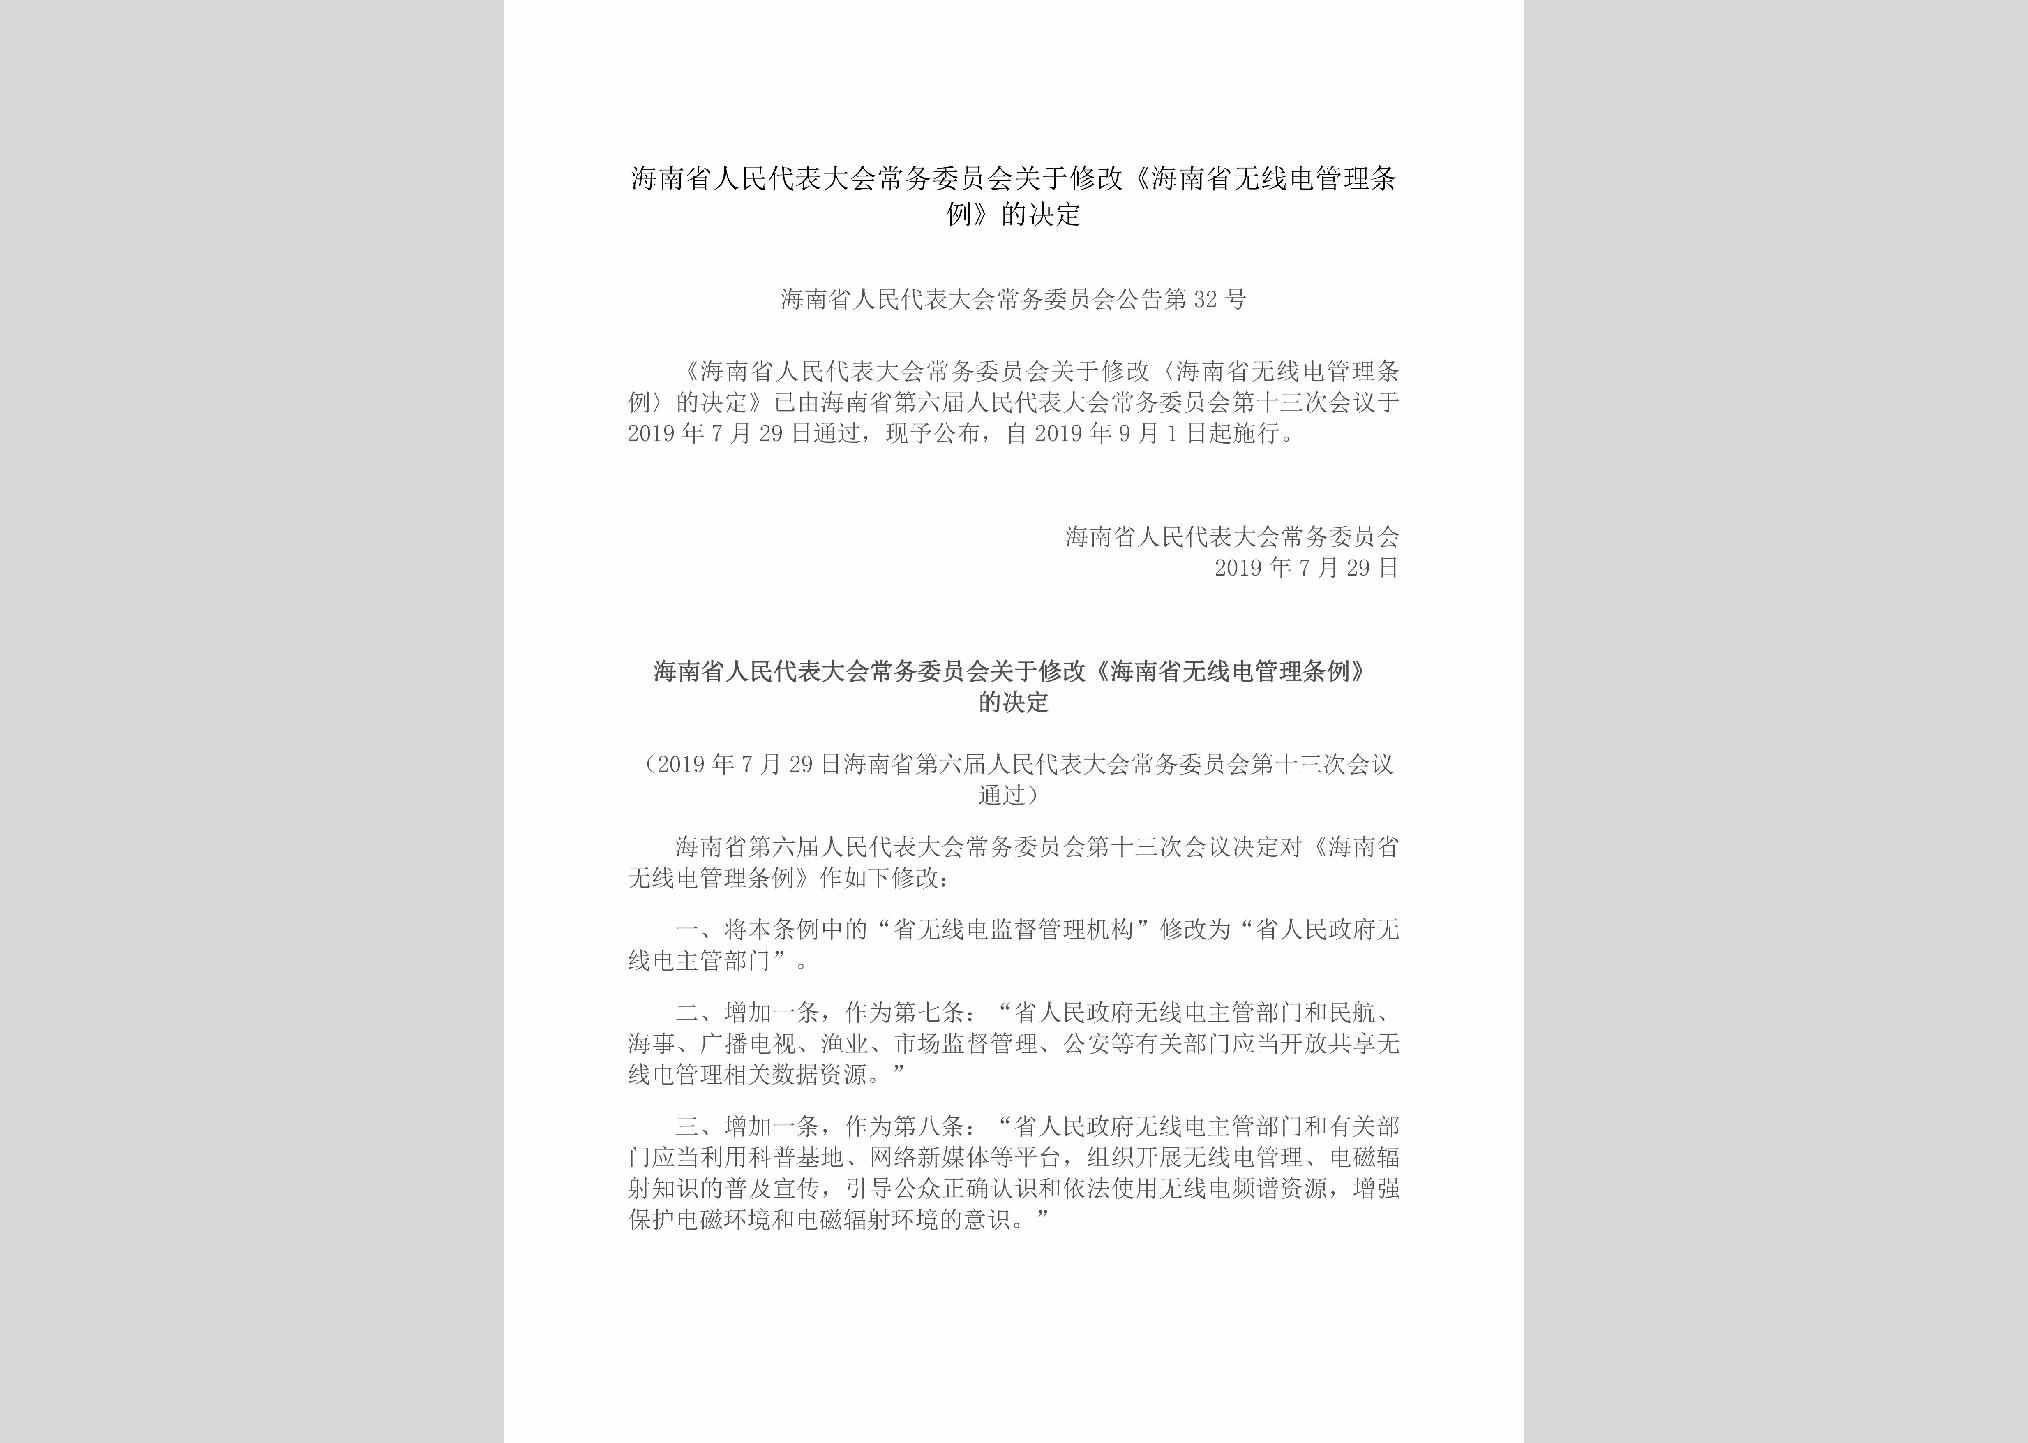 海南省人民代表大会常务委员会公告第32号：海南省人民代表大会常务委员会关于修改《海南省无线电管理条例》的决定